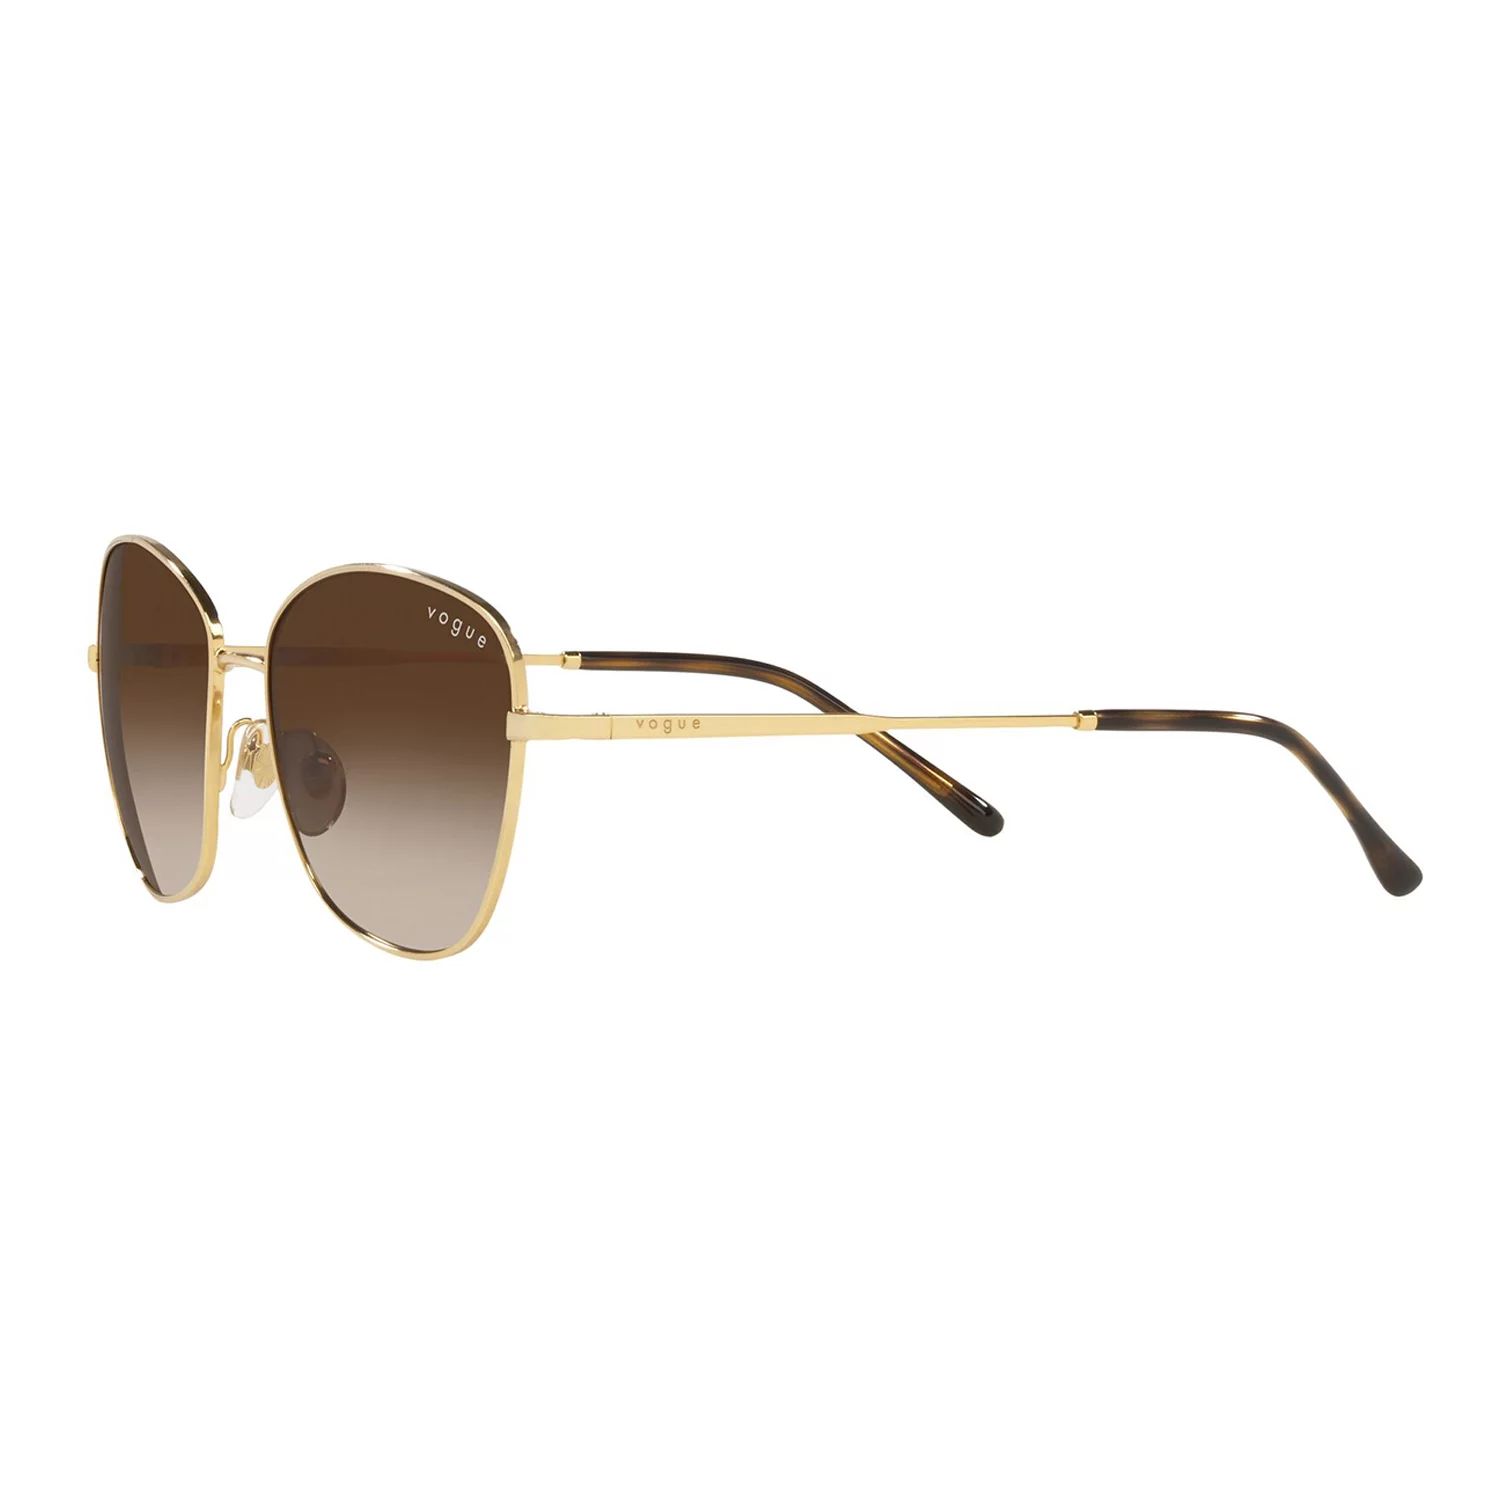 Женские солнцезащитные очки-бабочки Vogue Eyewear Hailey Bieber Collection 53 мм Vogue цена и фото